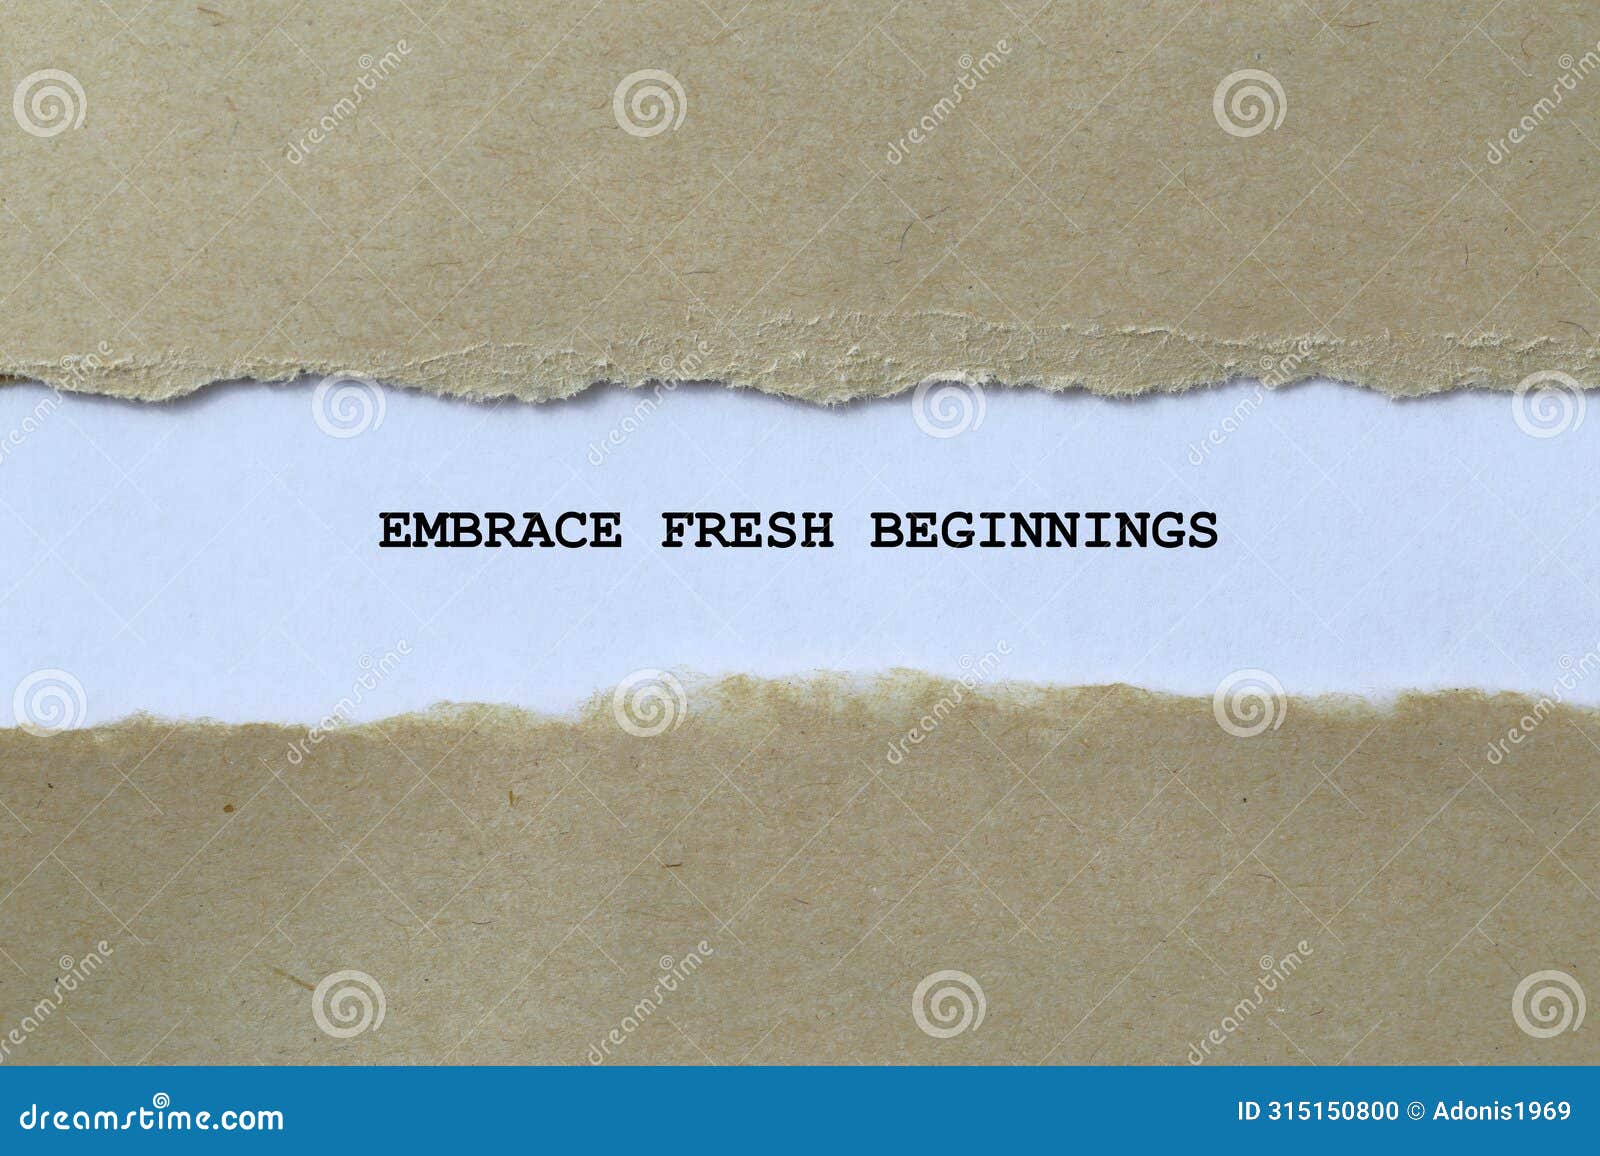 embrace fresh beginnings on white paper